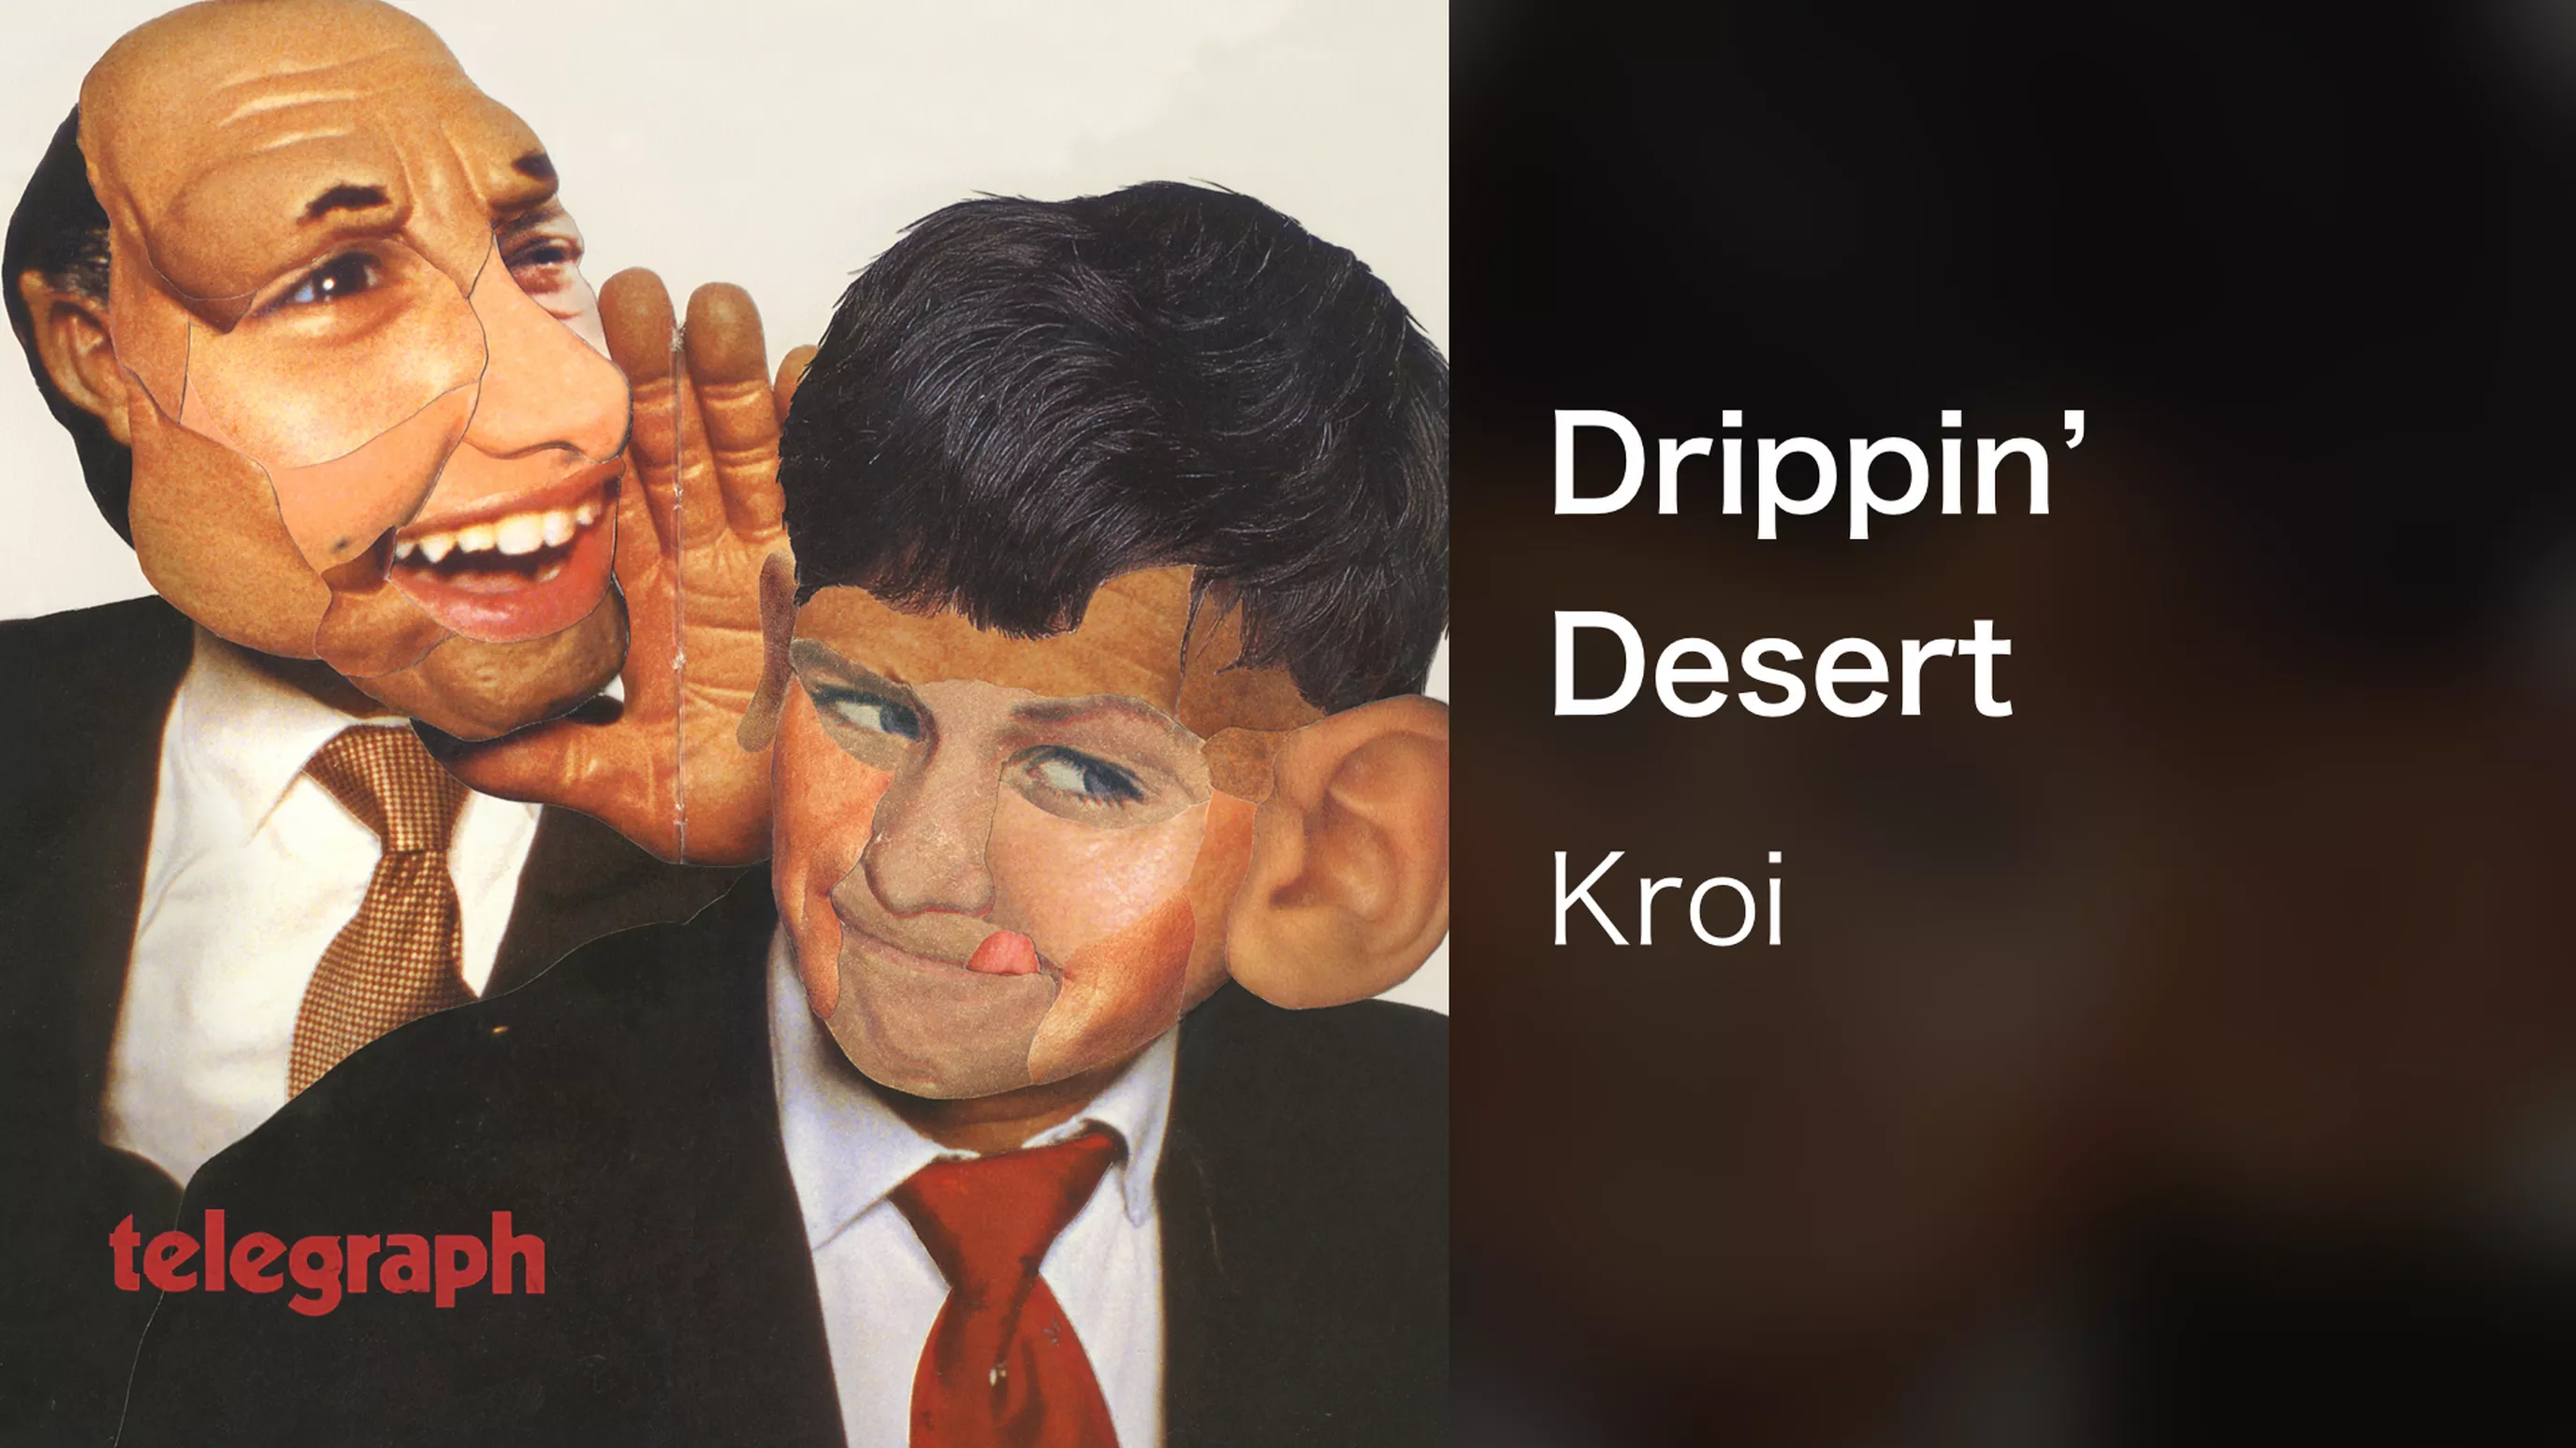 Drippin' Desert